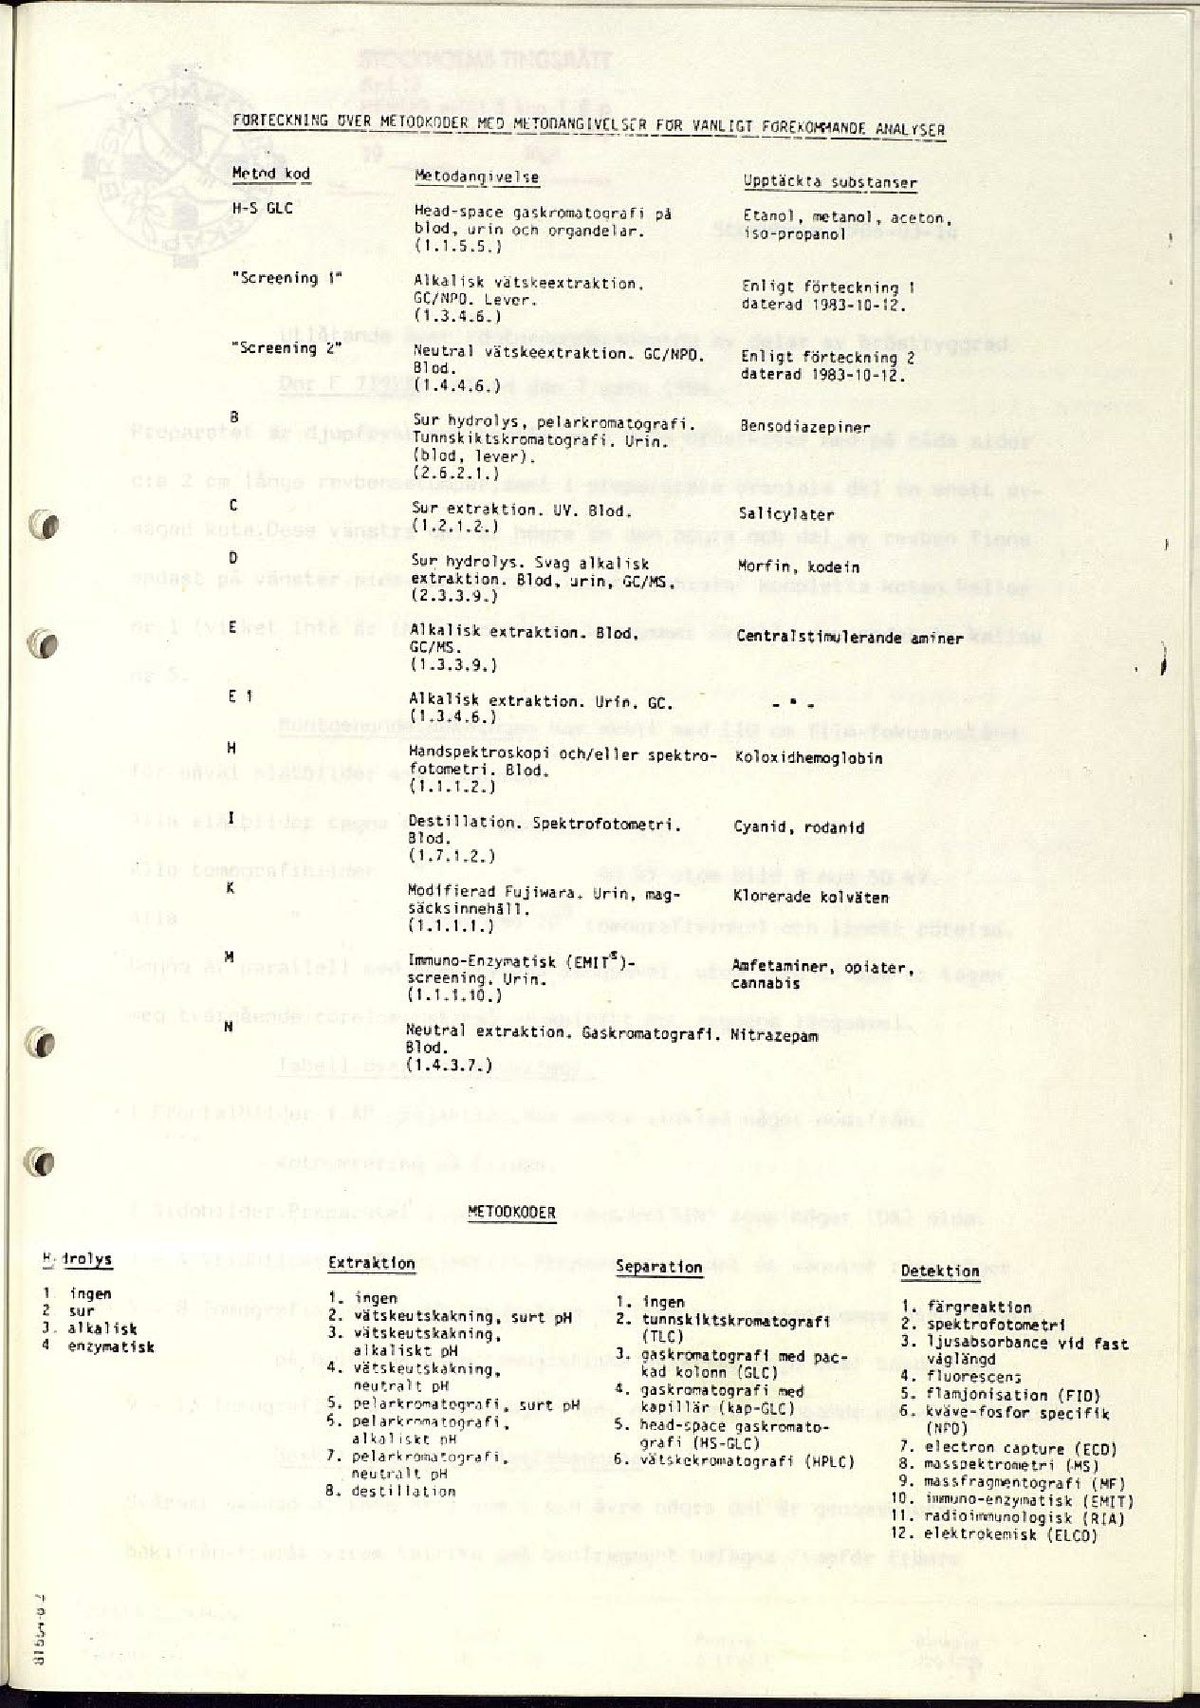 Ann-1986-03-27 B3-02 Obduktionsrapport med kompletterande utlåtande med bilagor.pdf